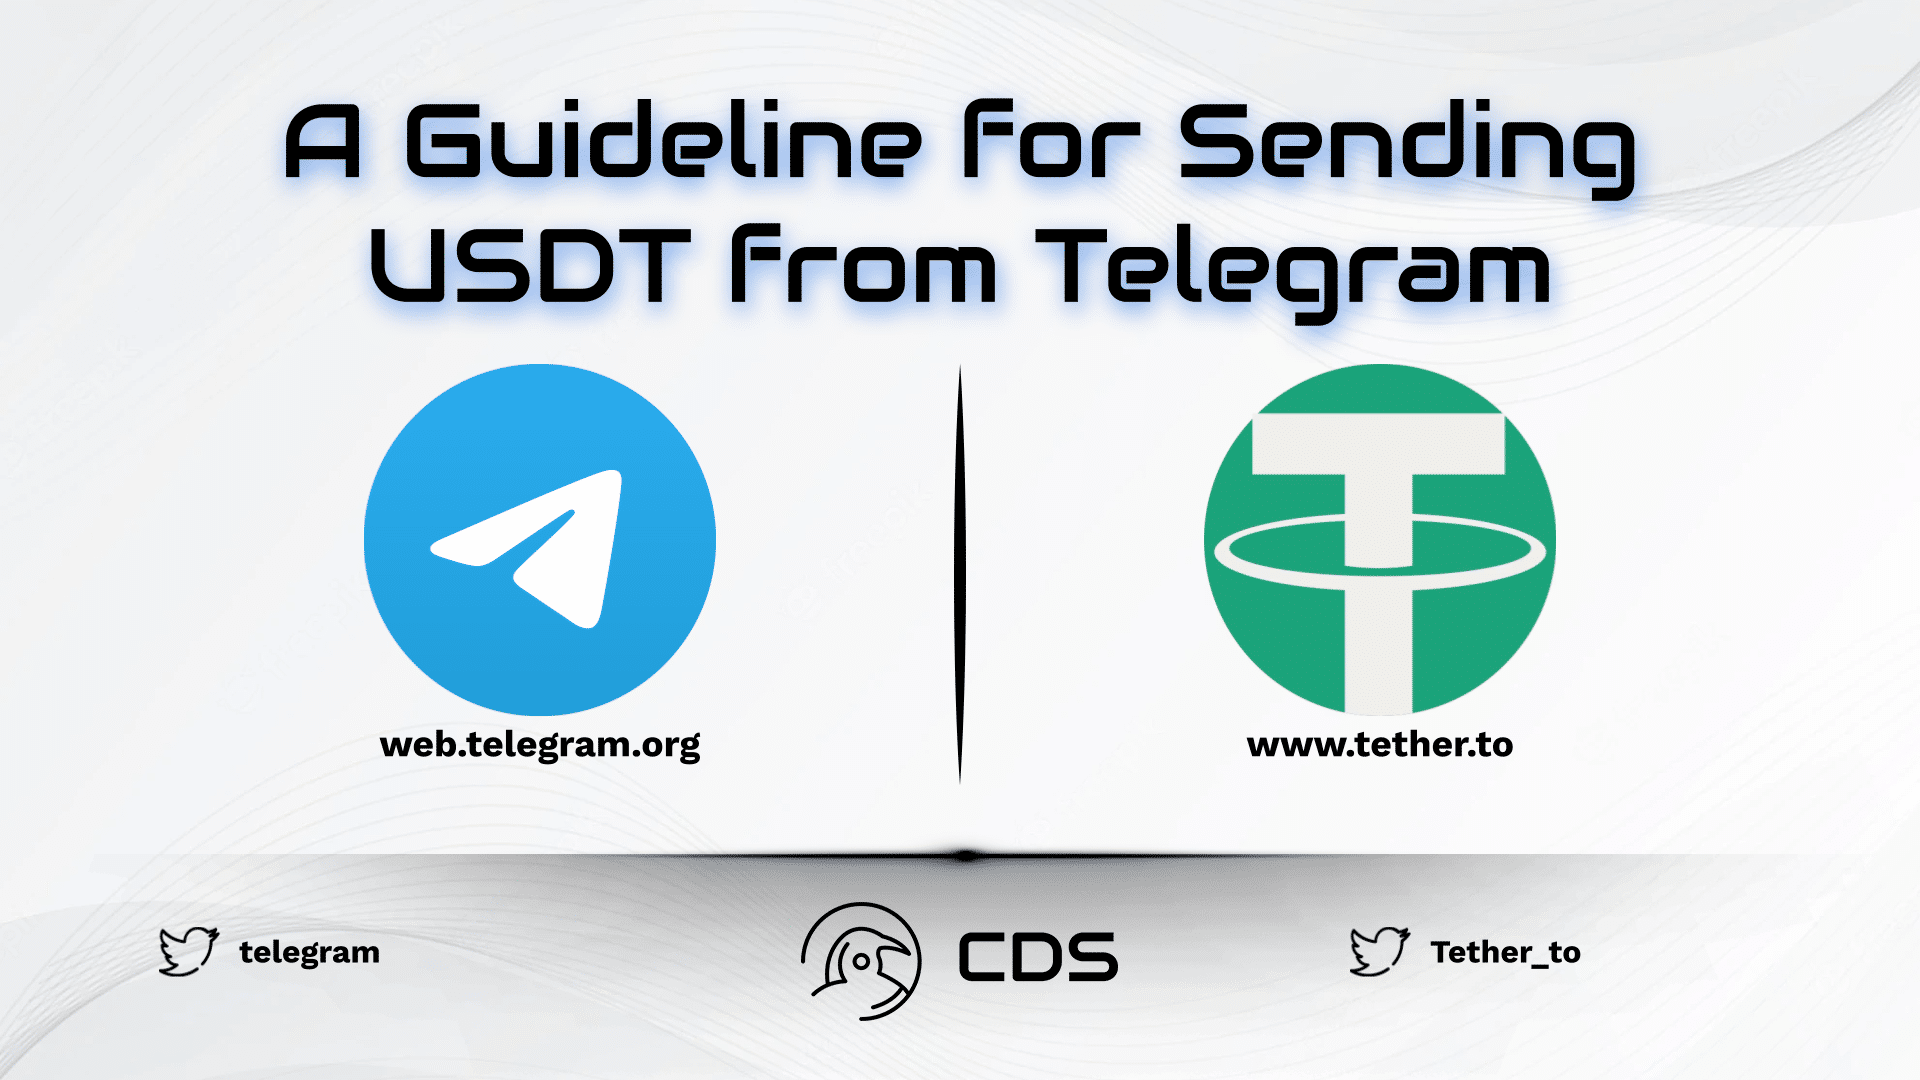 A Guideline for Sending USDT from Telegram